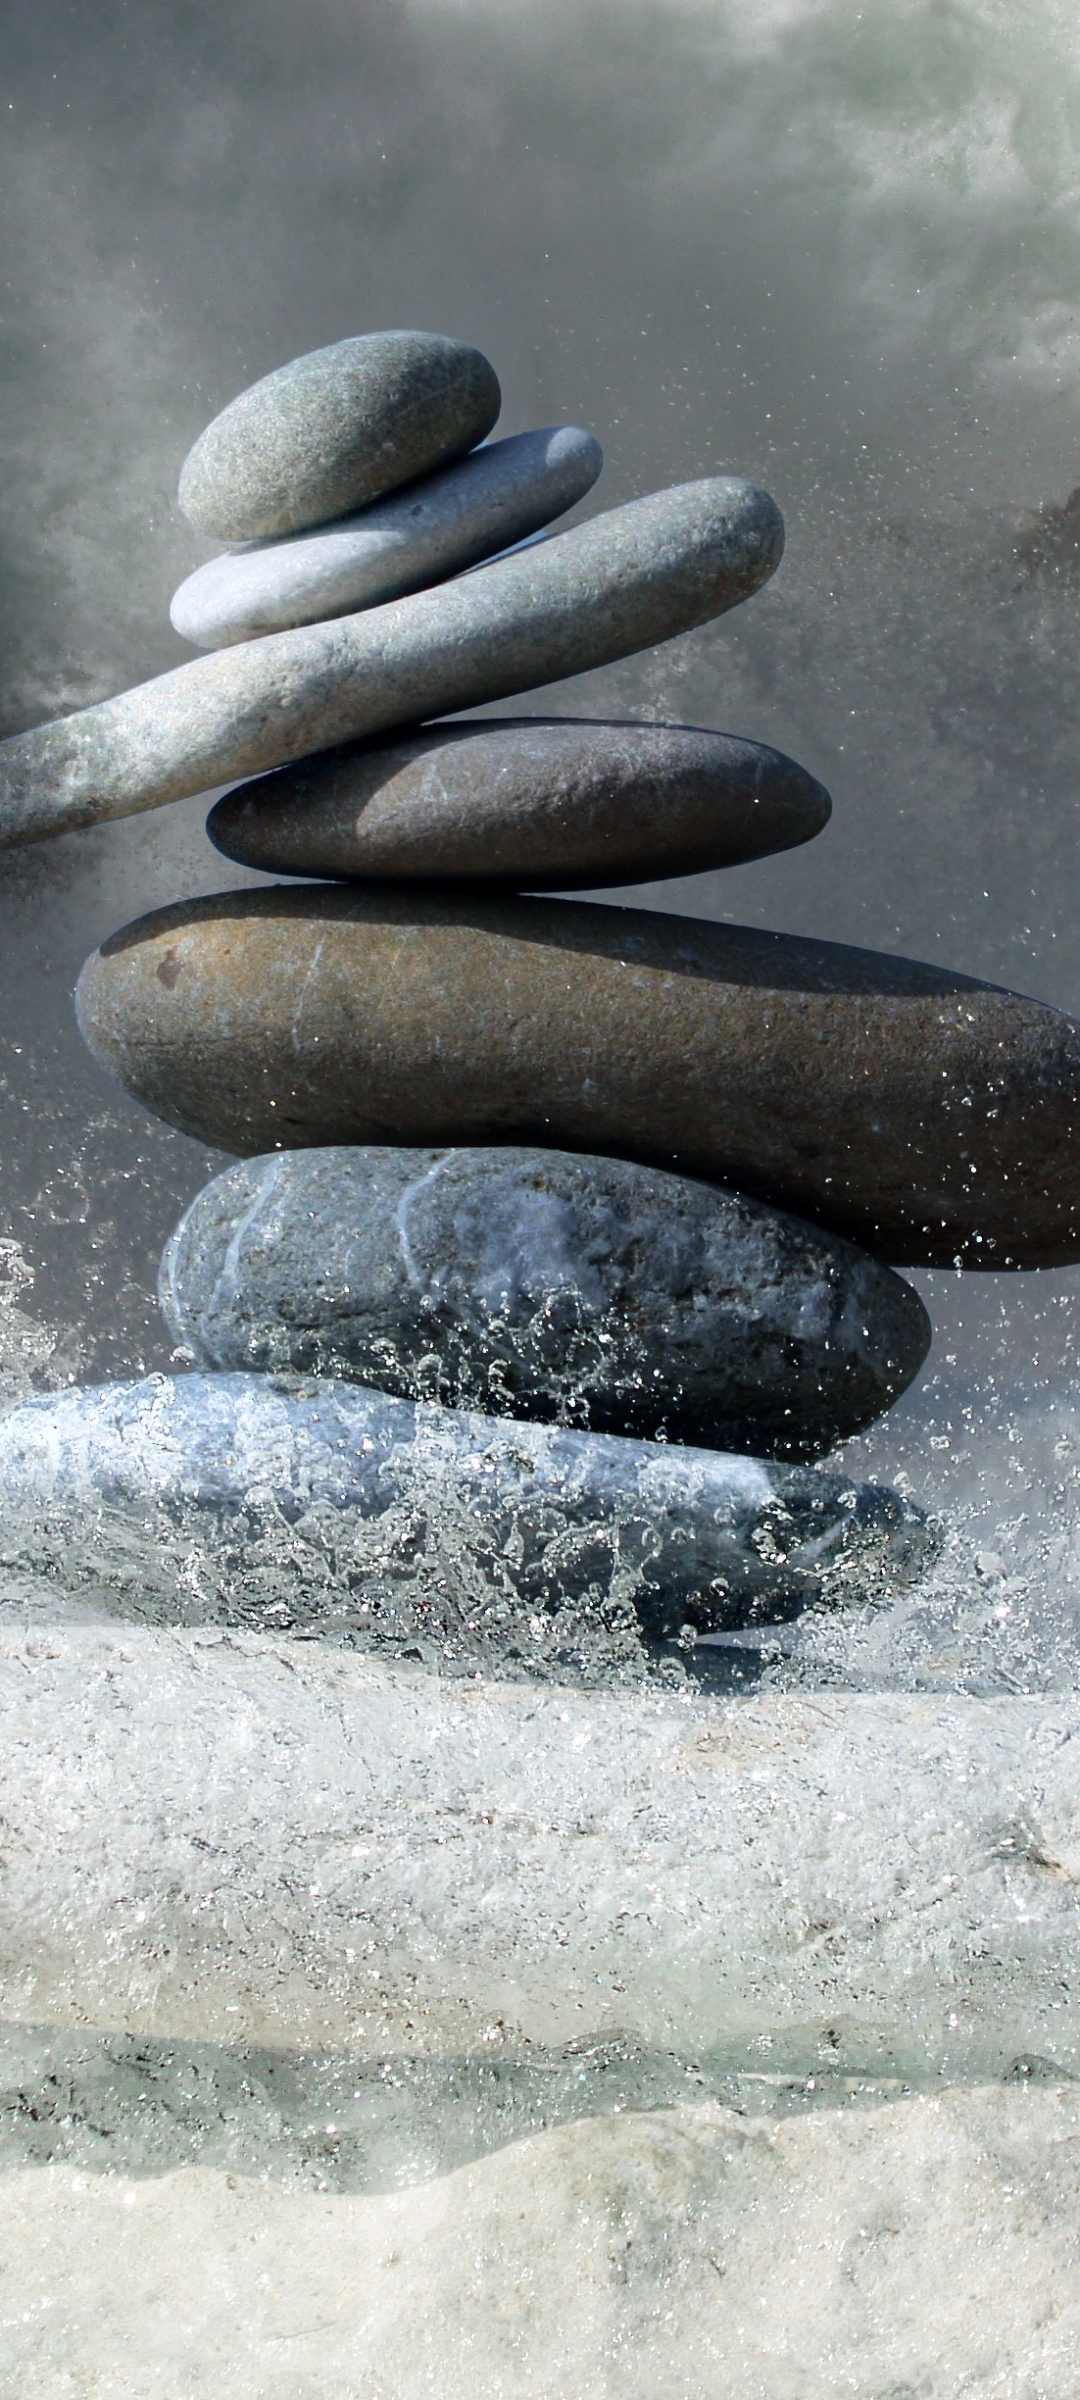 Zen Stones with Water Splashing Around Them by Karen Arnold